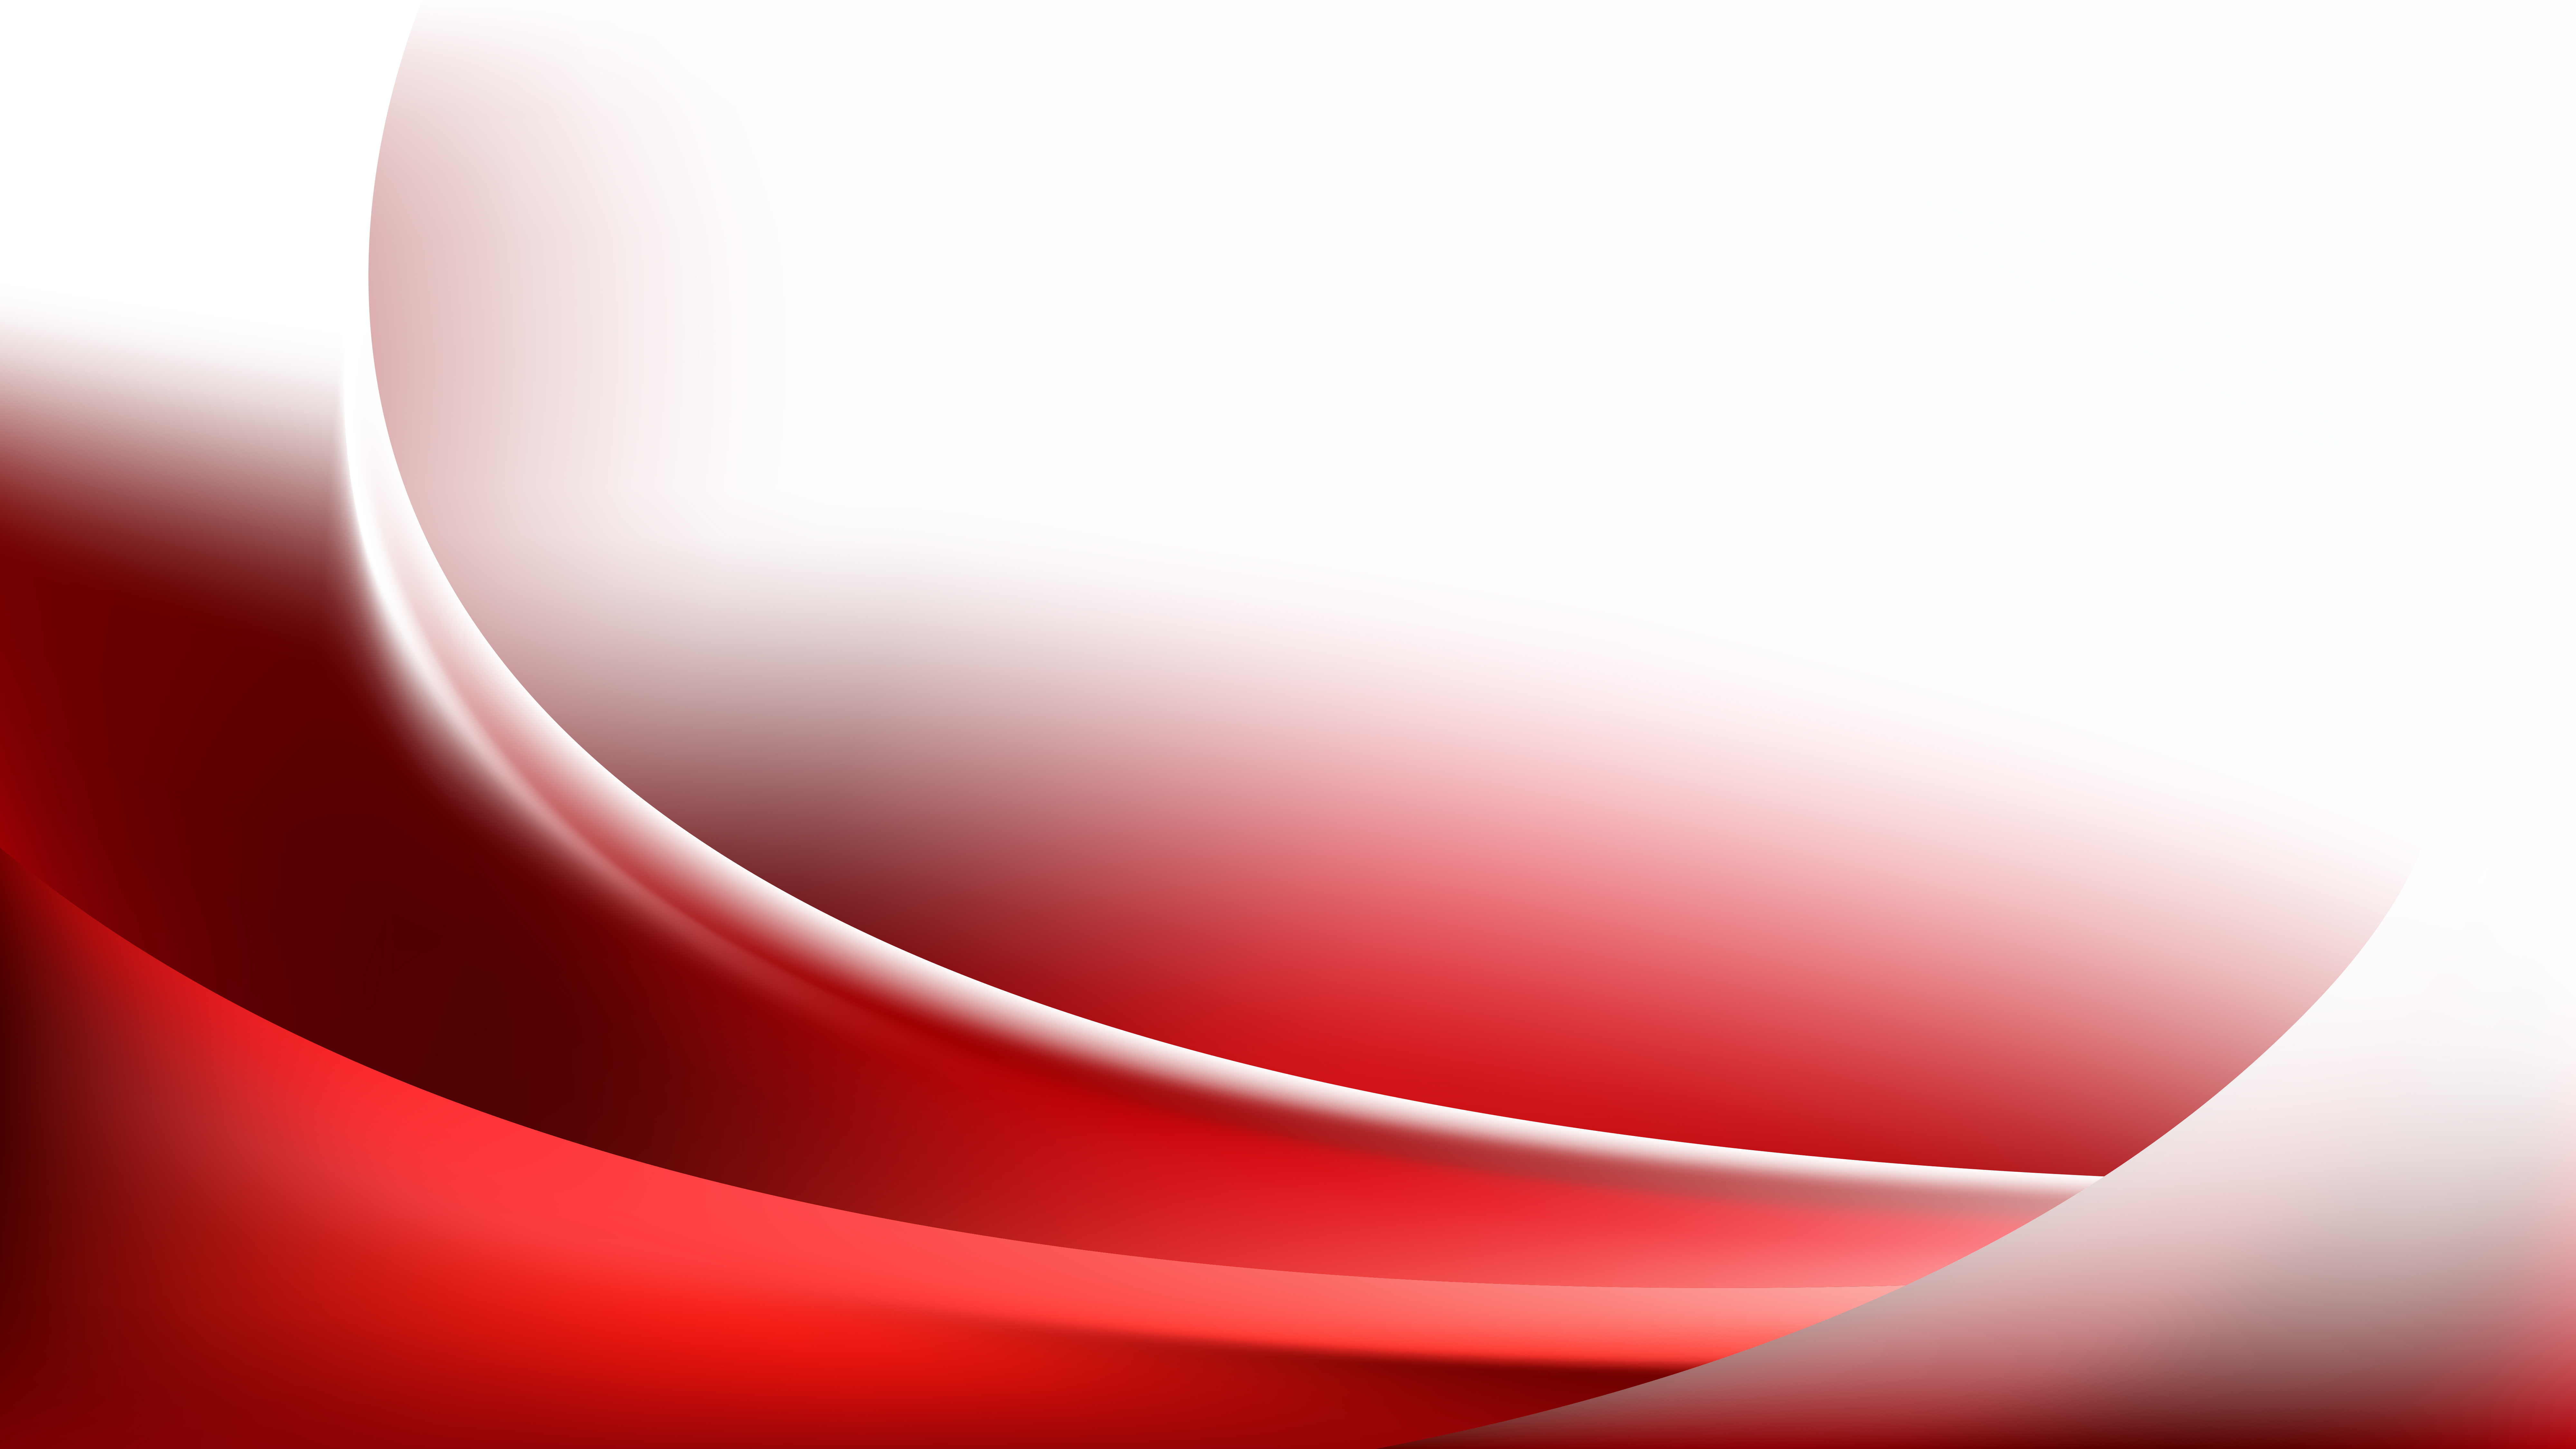 Vector hình nền đường cong đỏ trắng trừu tượng miễn phí: Thiết kế đường cong độc đáo, Vector hình nền sử dụng gam màu đỏ trắng trừu tượng để tạo nên một sản phẩm độc đáo. Đường cong được sắp xếp nhịp nhàng và hài hòa, đem đến cảm giác thoải mái và độc đáo cho người xem.